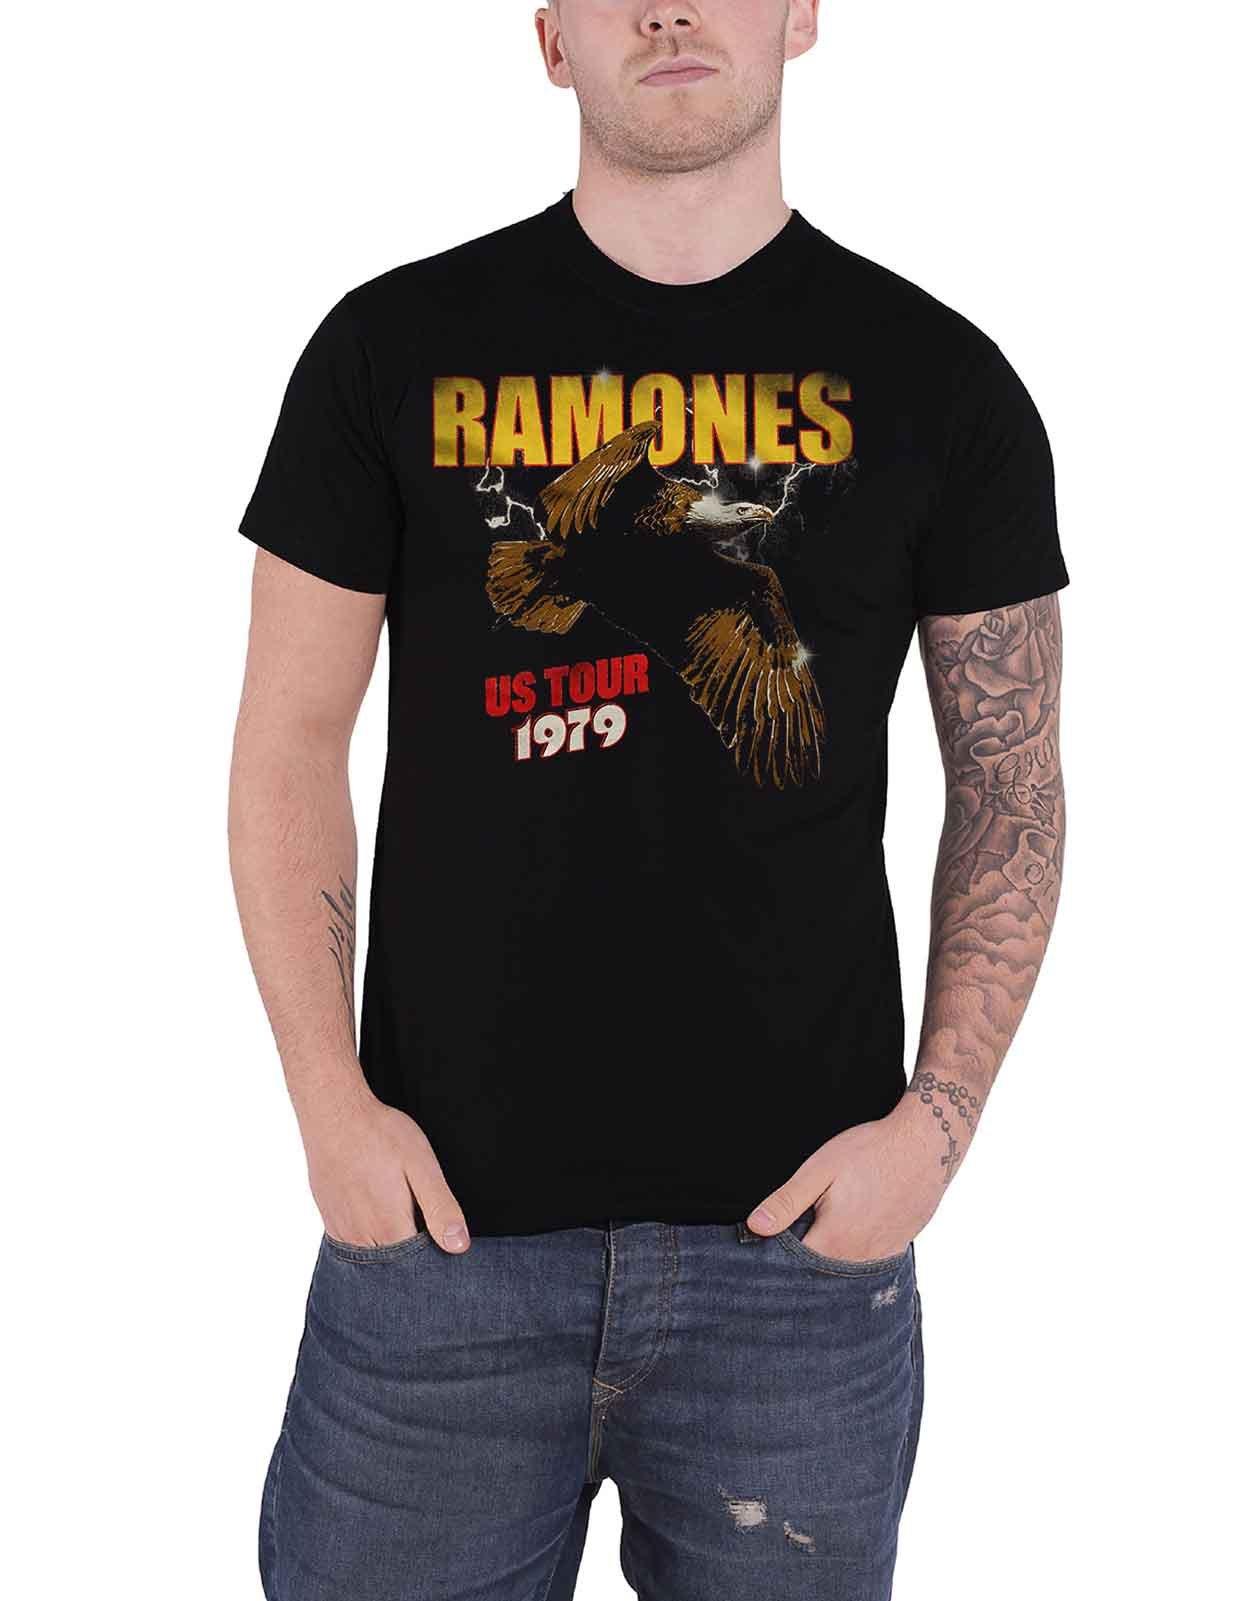 Футболка с орлом тура по США 1979 года Ramones, черный skimo tour crampon camp usa цвет one color